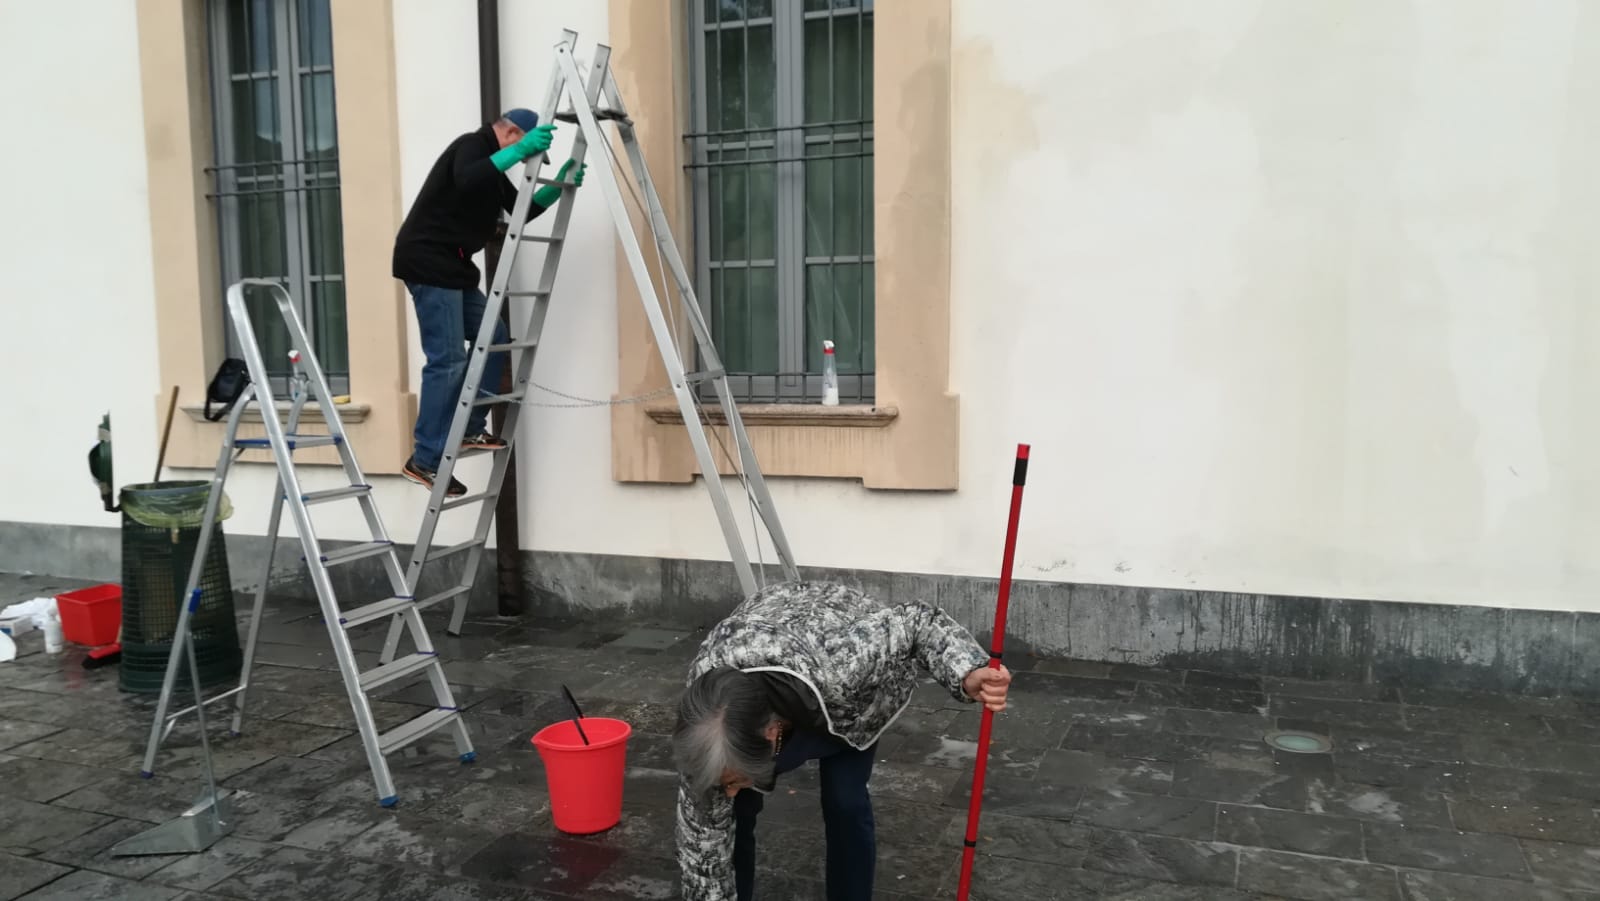 Il sindaco Angelo Stucchi di Gorgonzola insieme ai volontari ripuliscono i danni lasciati dai vandali alla fiera di Santa Caterina